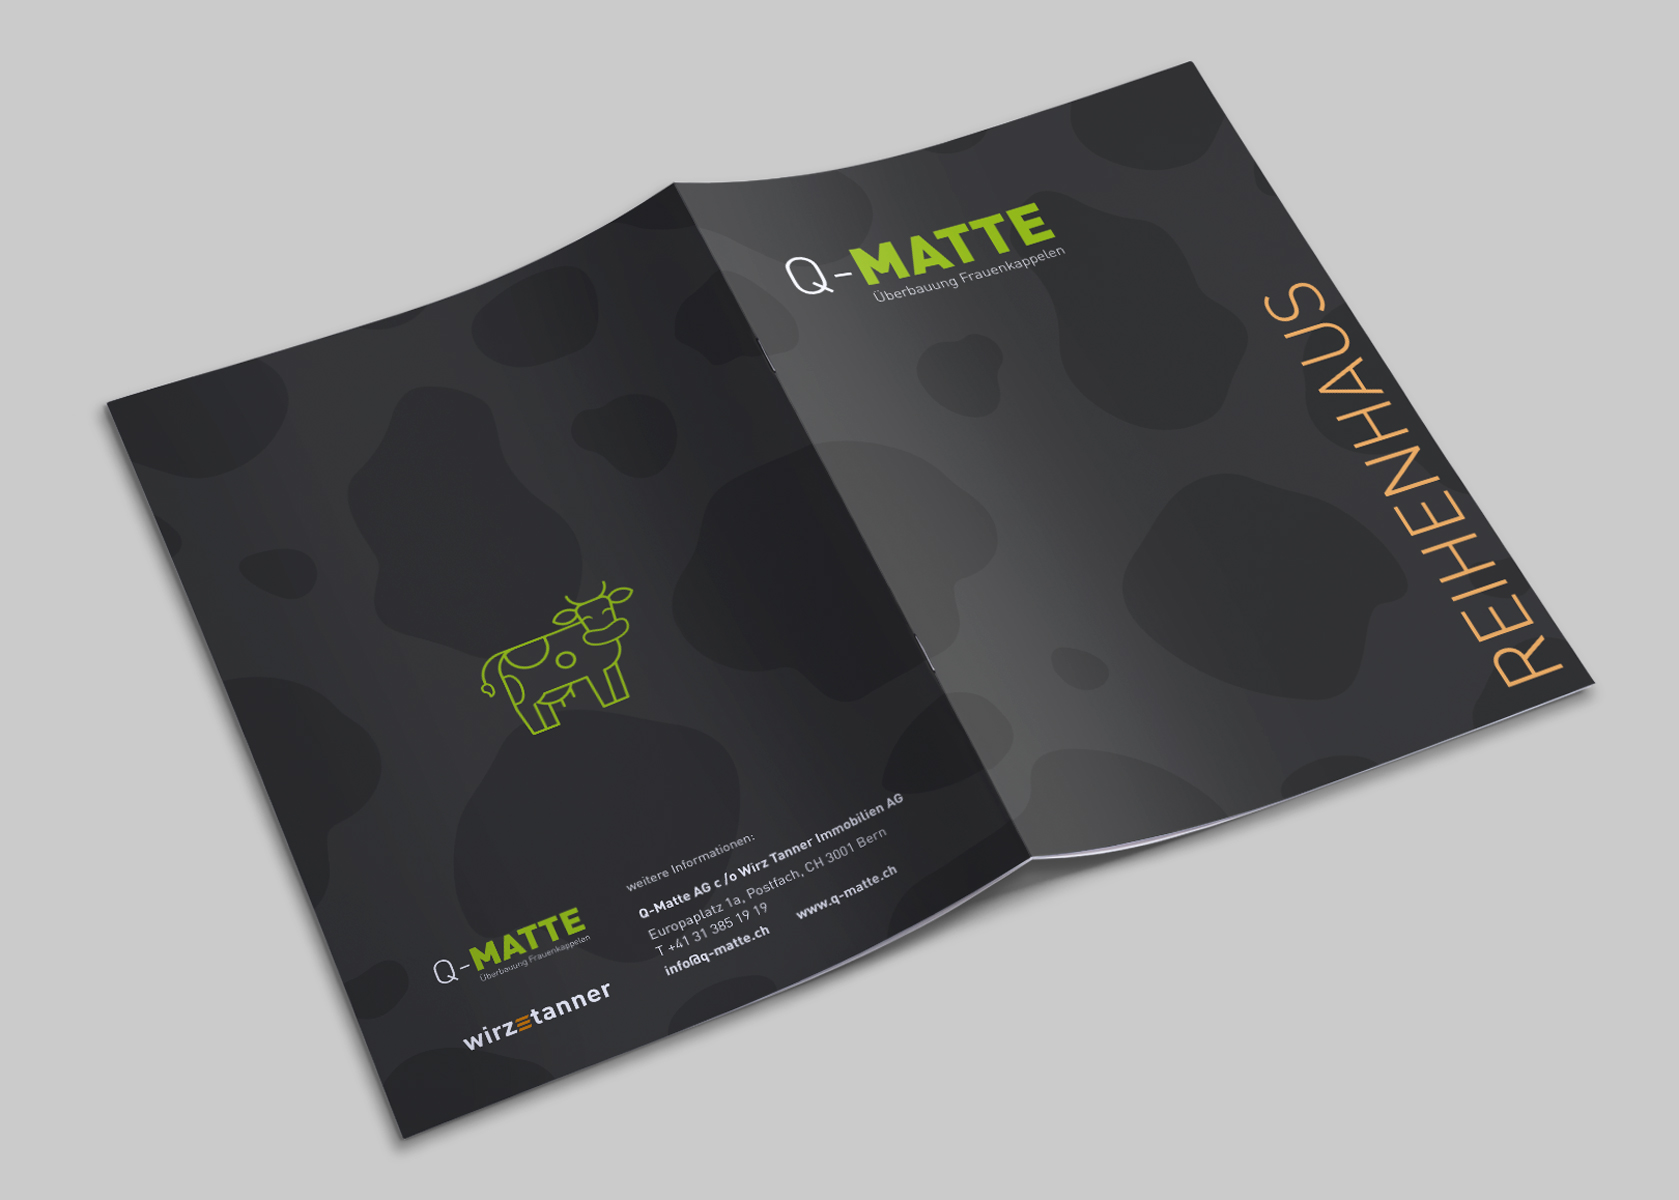 QMatte-GPU-Design-brochure-cover